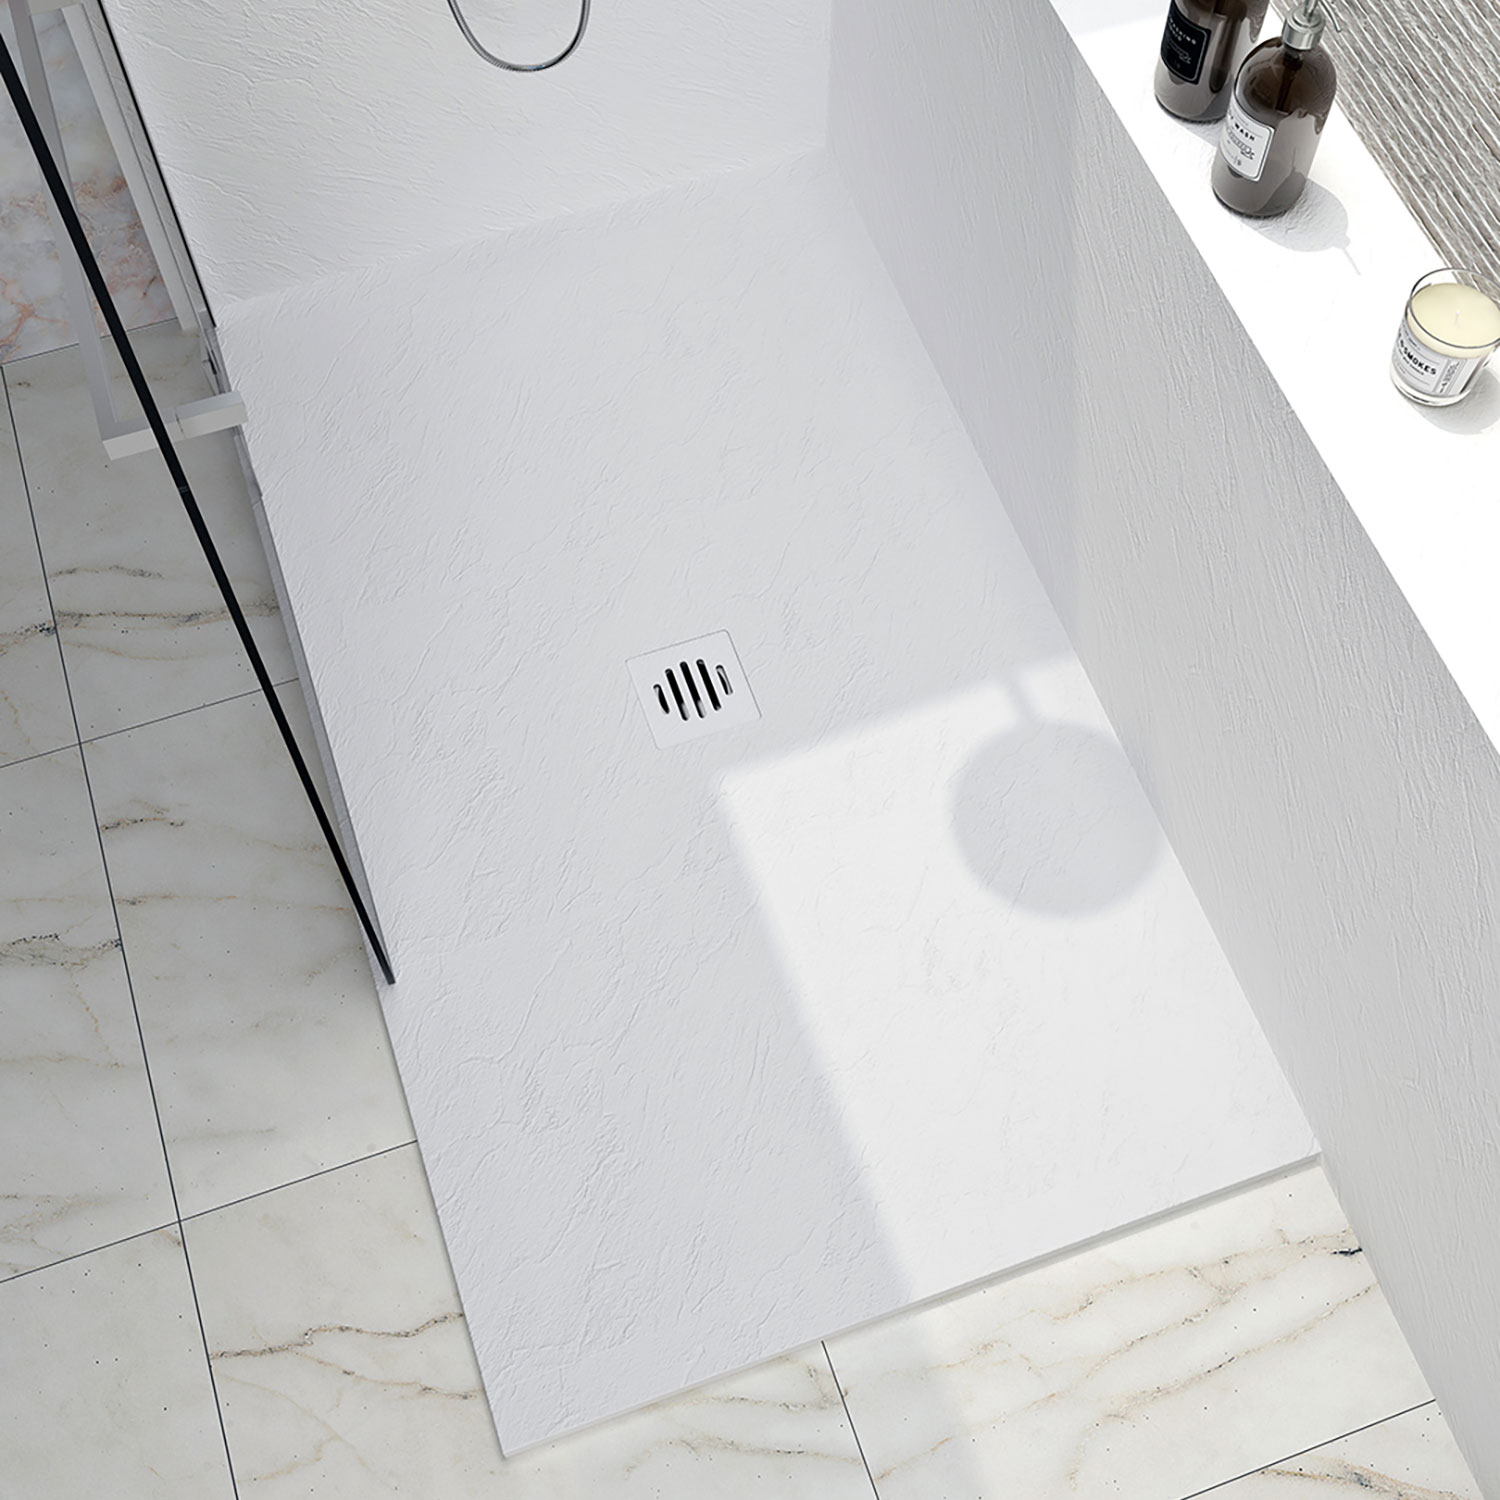 Shower base Slate 48 x 42, custom-made tile flange installation, in white